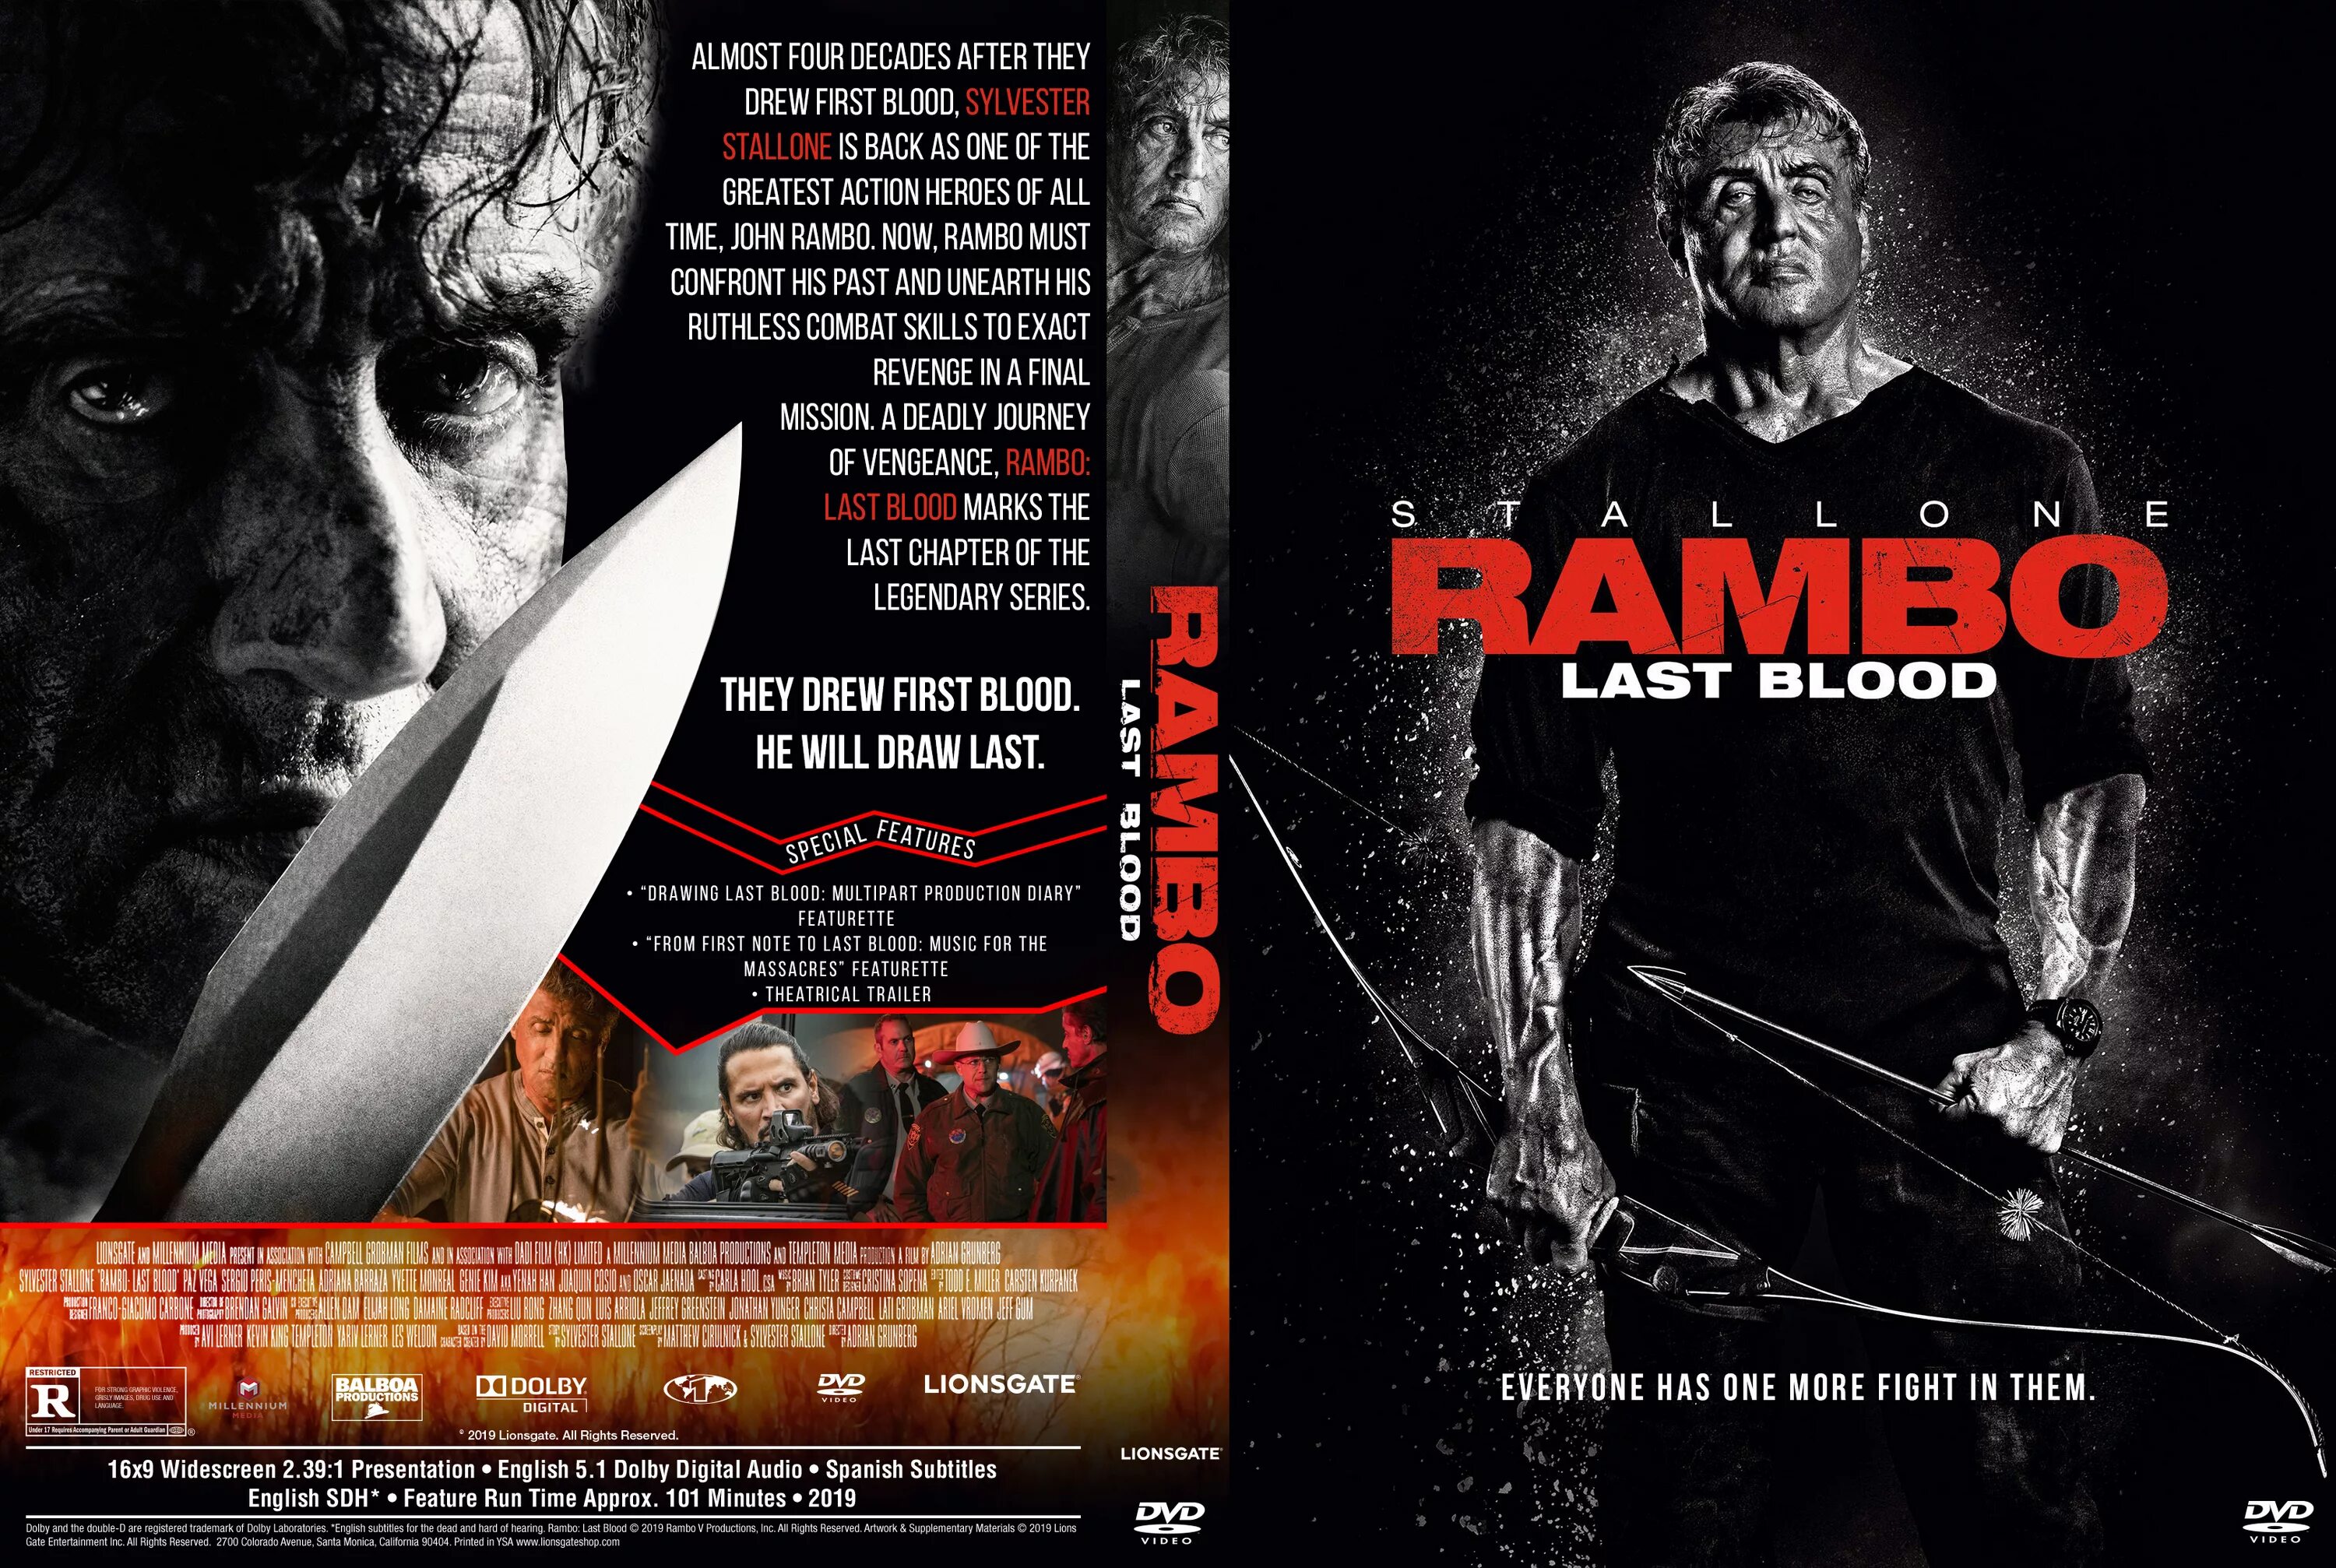 Последний кровь 5. Рэмбо последняя кровь DVD Cover. Рэмбо: последняя кровь (2019) Постер.